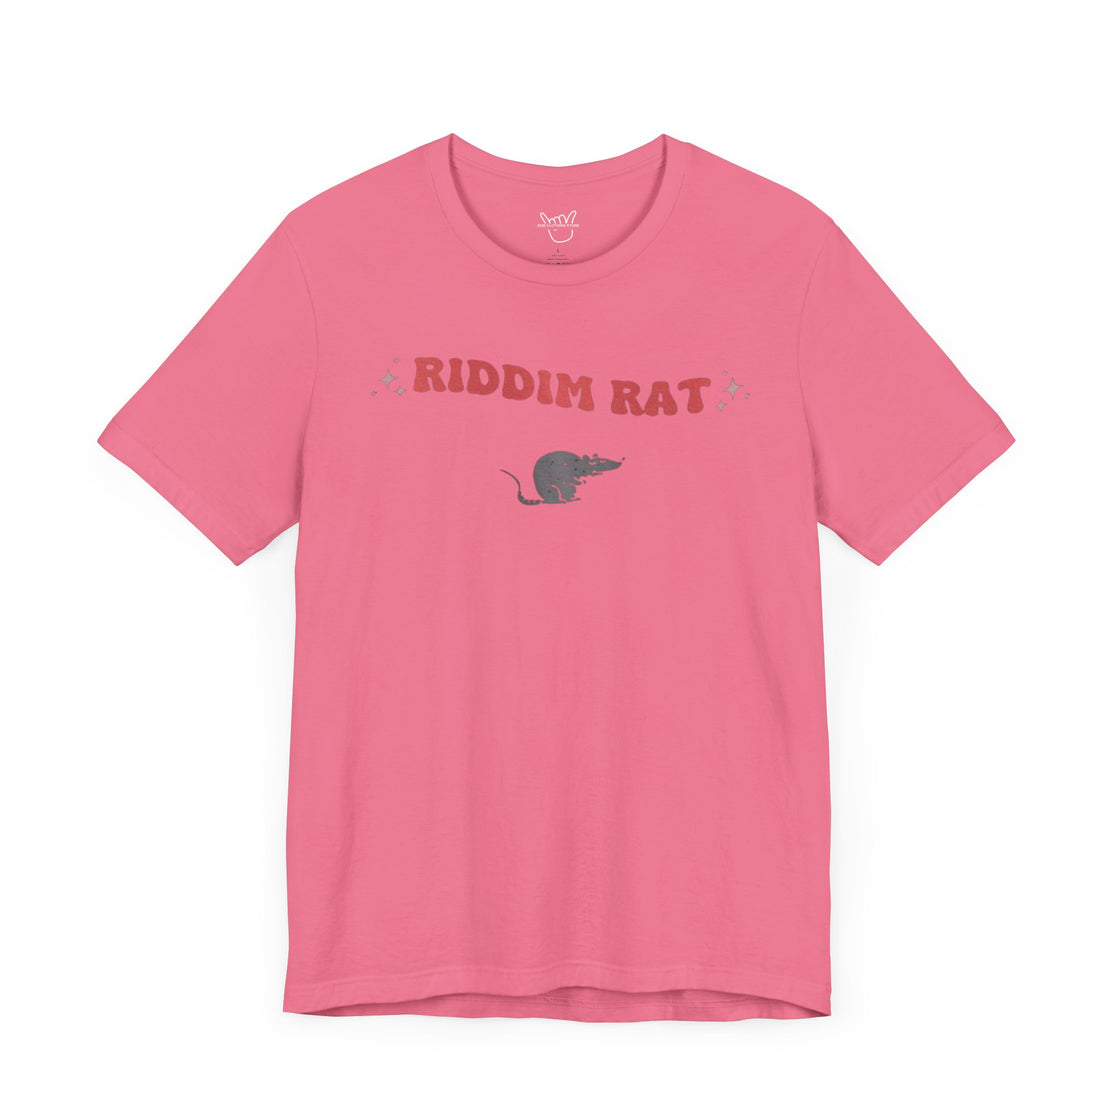 Riddim rat tshirt- edm merch- edm tshirt- riddim tshirt-rave shirt-feral edm tshirt